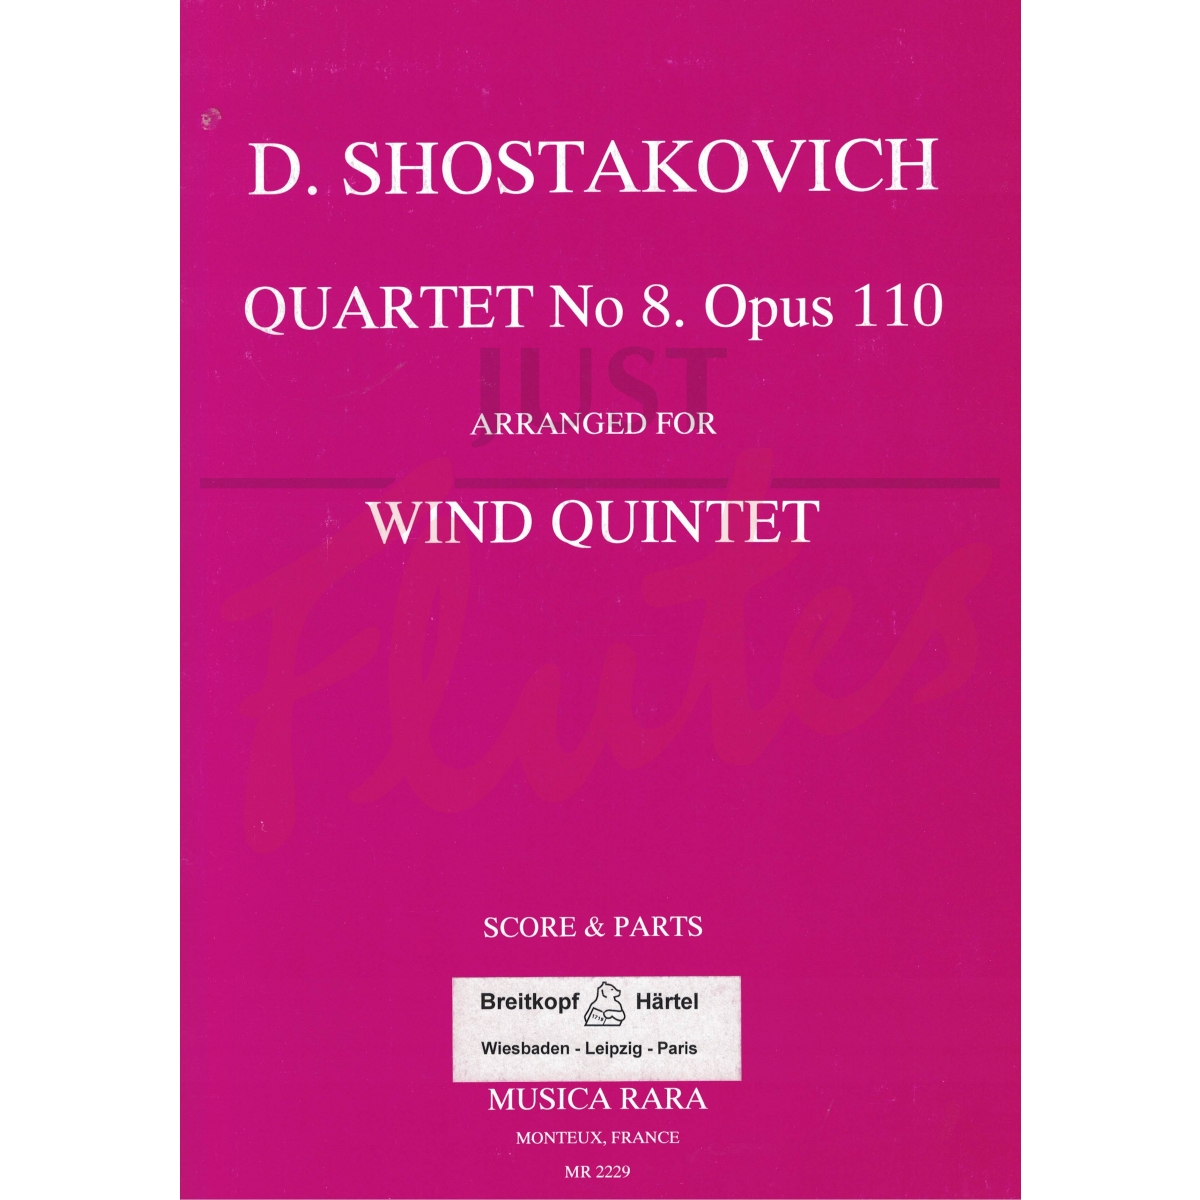 String Quartet No 8 Arranged for Wind Quintet